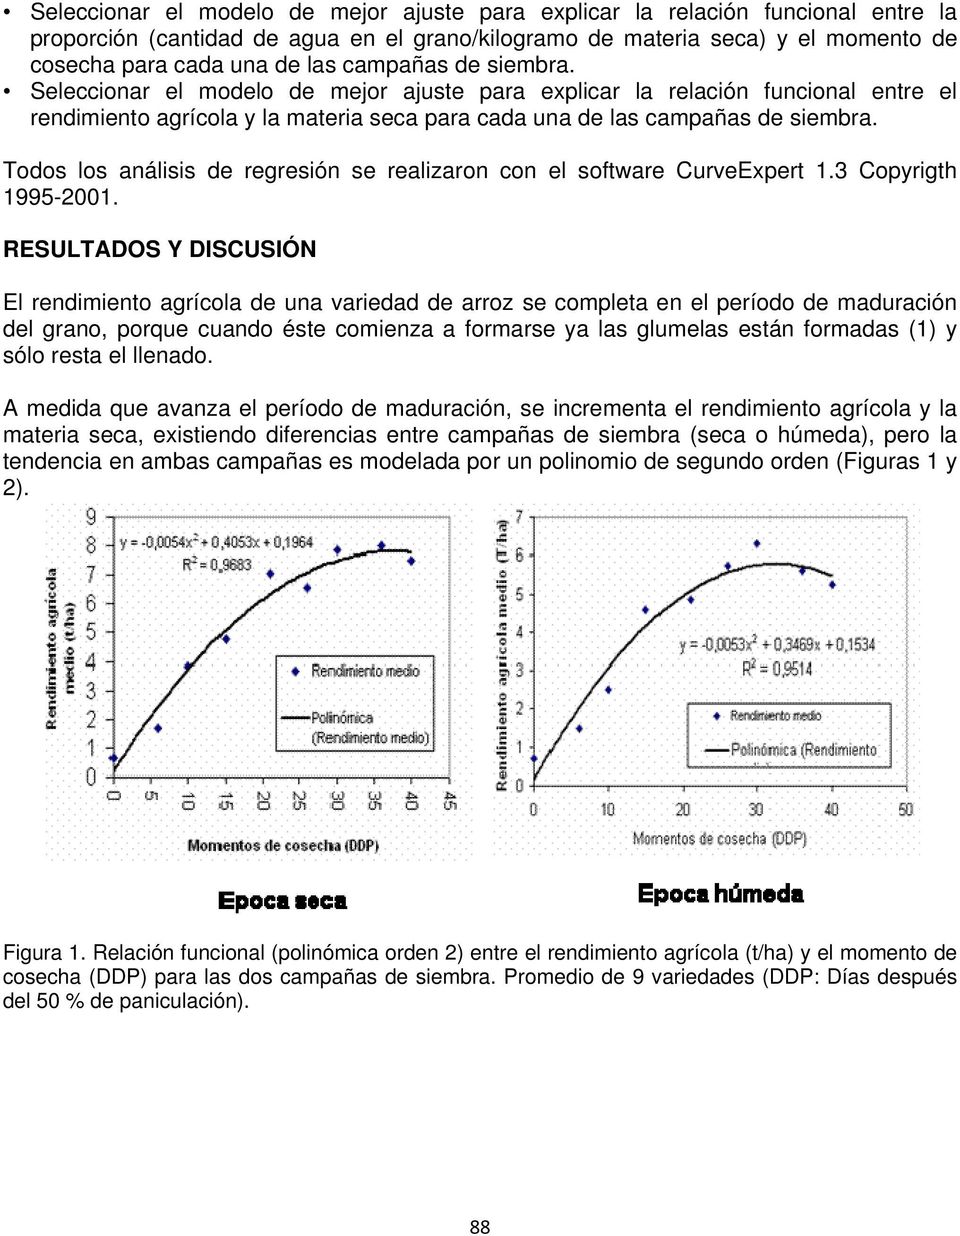 Todos los análisis de regresión se realizaron con el software CurveExpert 1.3 Copyrigth 1995-2001.